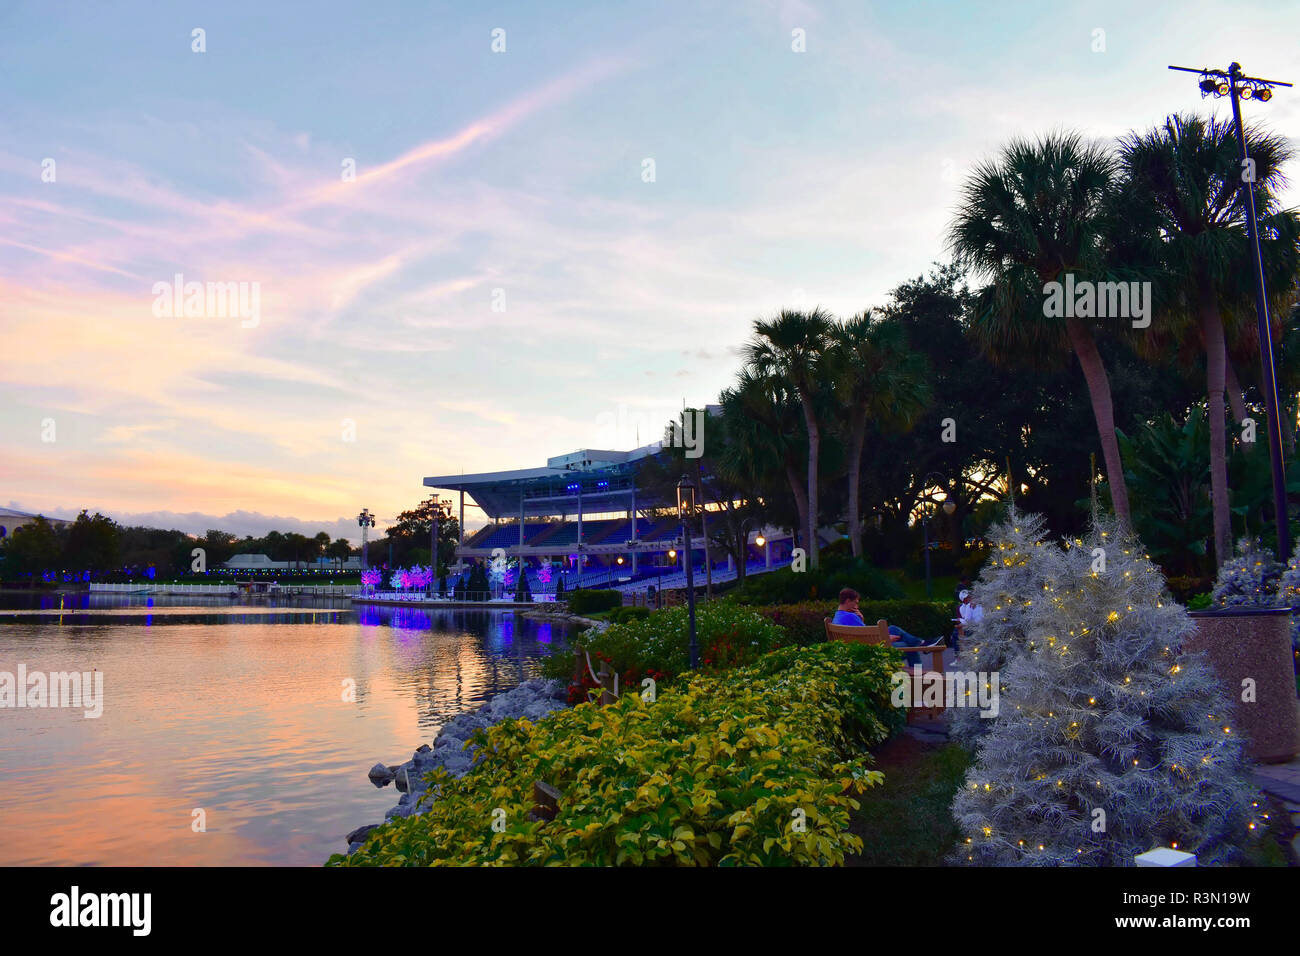 Orlando, Floride. 17 novembre, 2018. Vue panoramique sur le lac et sur le magnifique coucher de soleil dans le stade International Drive Area. Banque D'Images